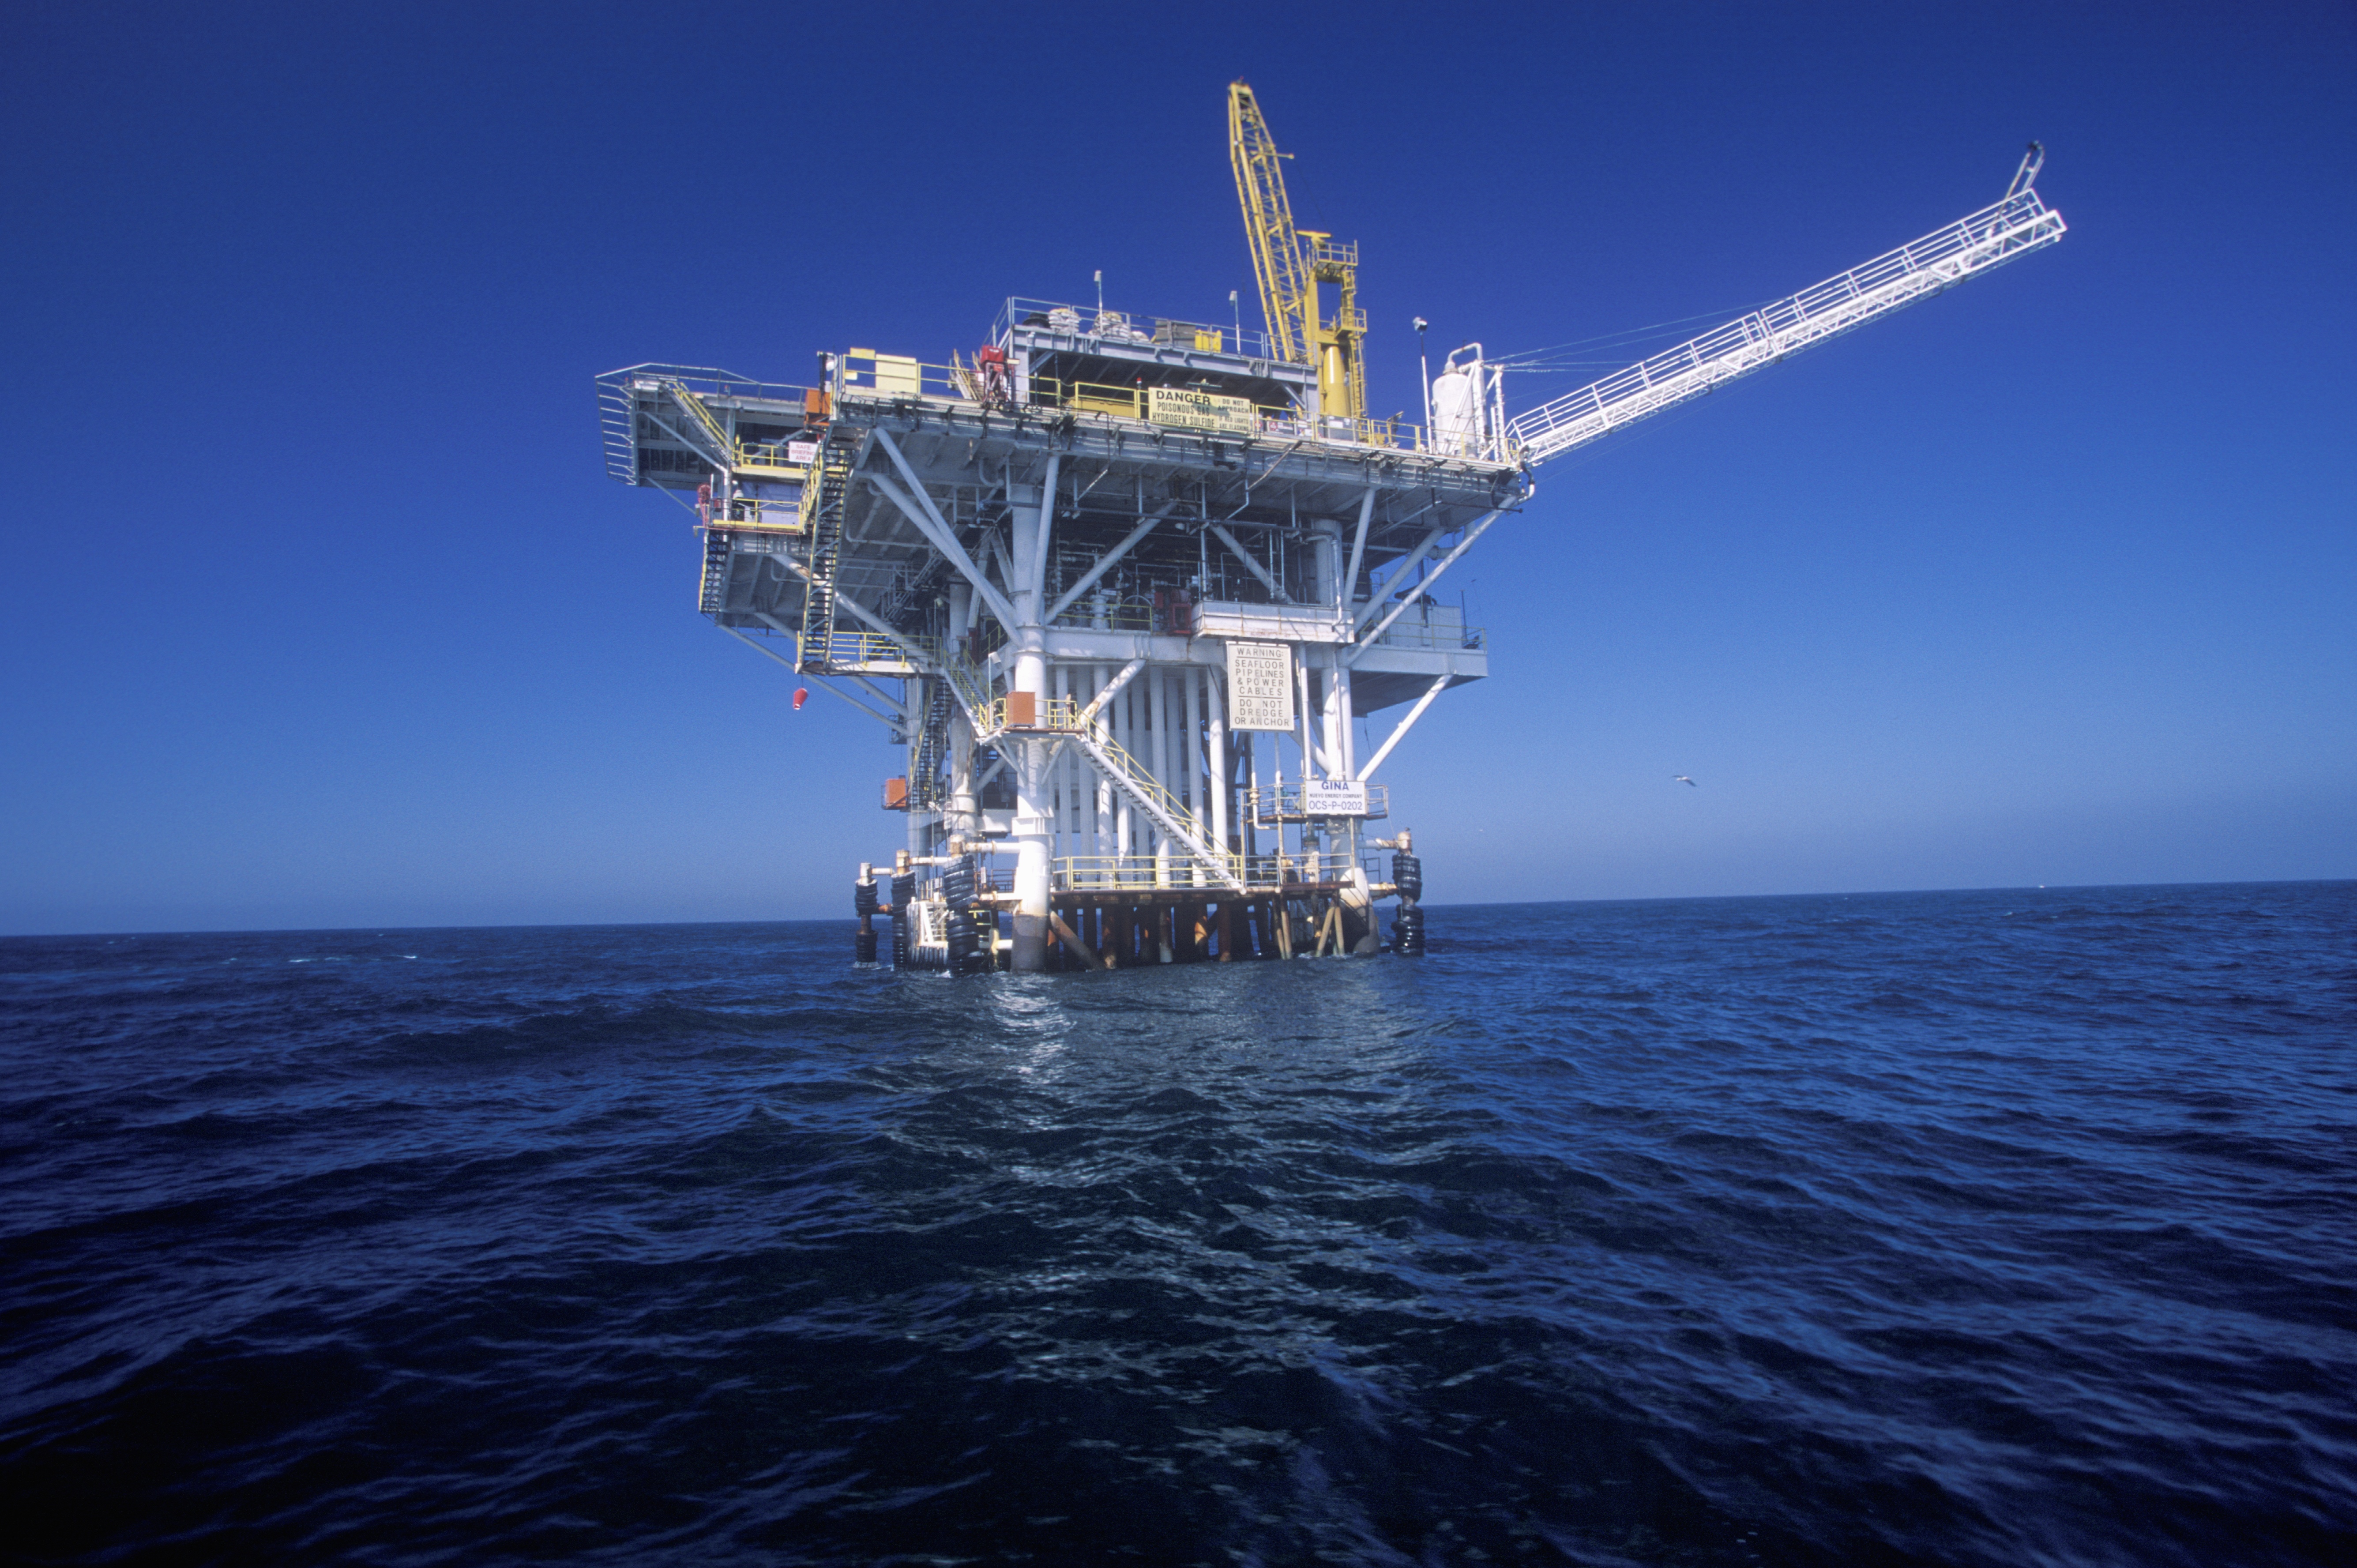 Мировые запасы мирового океана. Ресурсы океана. Нефтяная платформа. Добыча полезных ископаемых в Атлантическом океане. Минеральные ресурсы мирового океана.